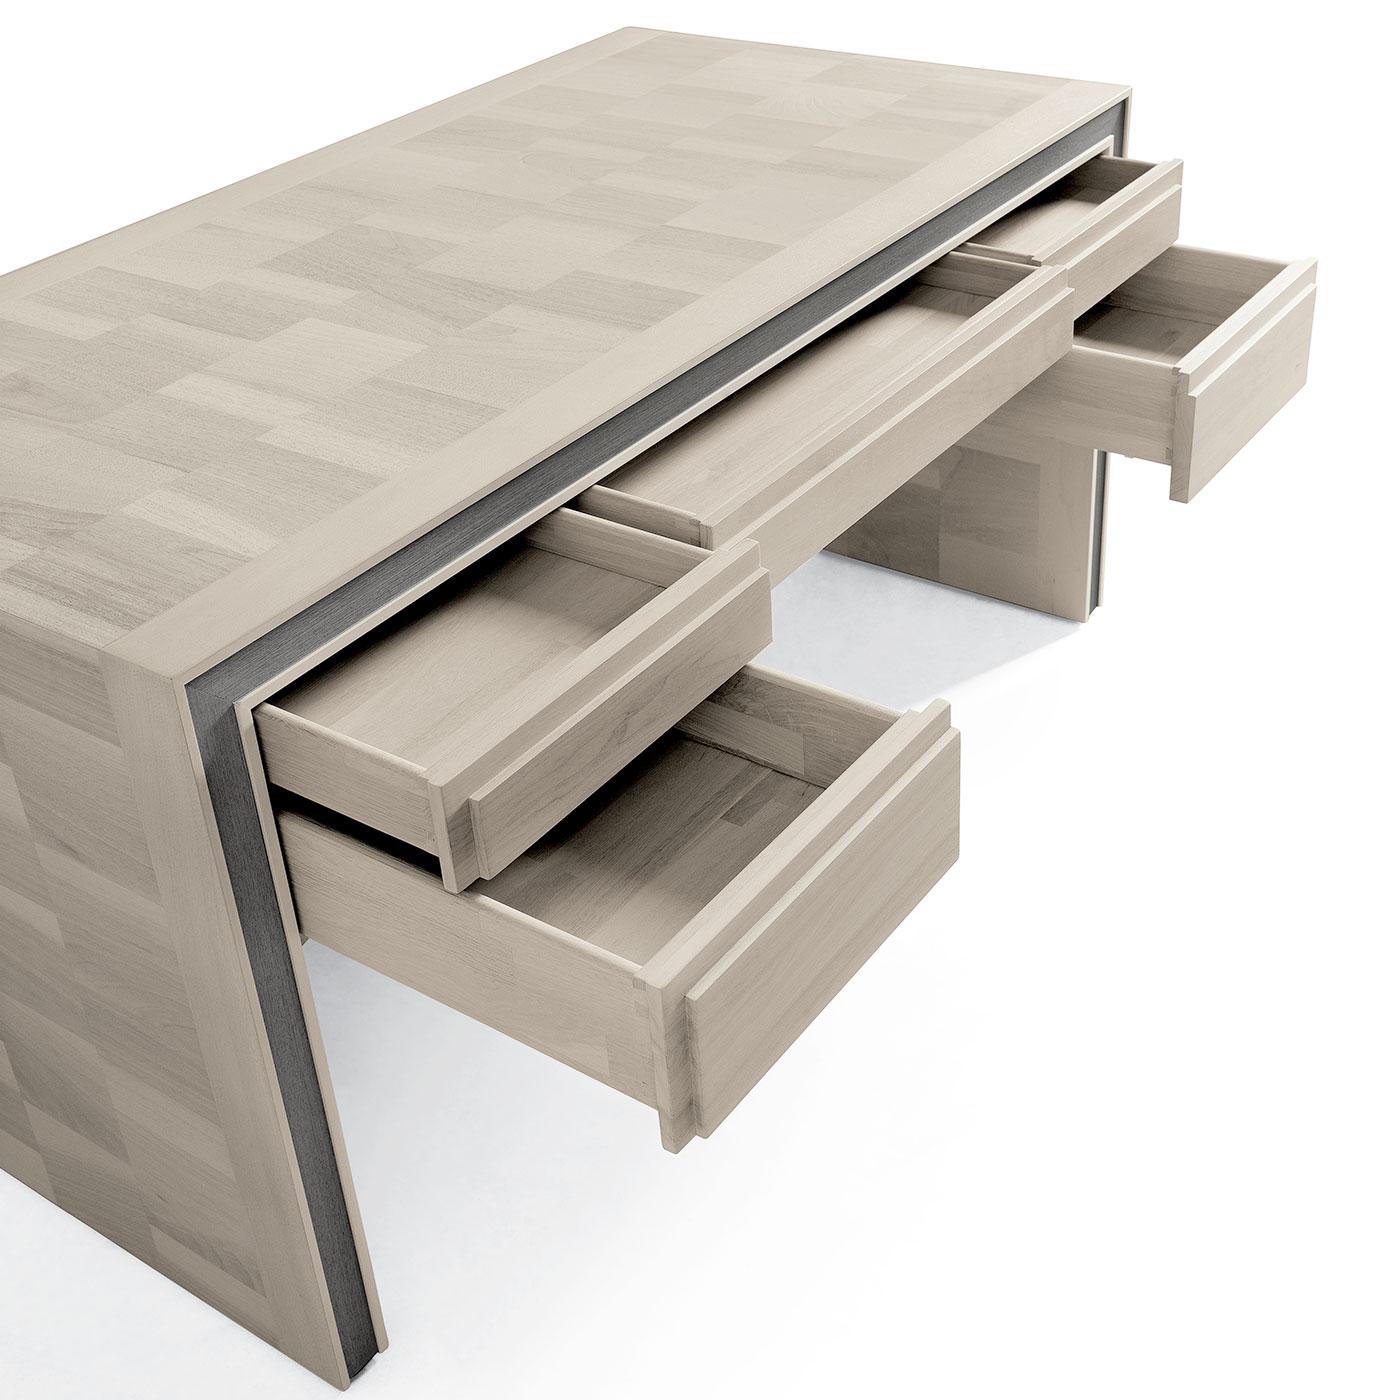 Der Massivholz-Schreibtisch Ideale vereint Ästhetik und Funktionalität. Ein Stück hochwertiger Handwerkskunst, das sowohl für den täglichen Gebrauch als auch für eine stilvolle Einrichtung geeignet ist. Der Schreibtisch verfügt über eine Platte aus